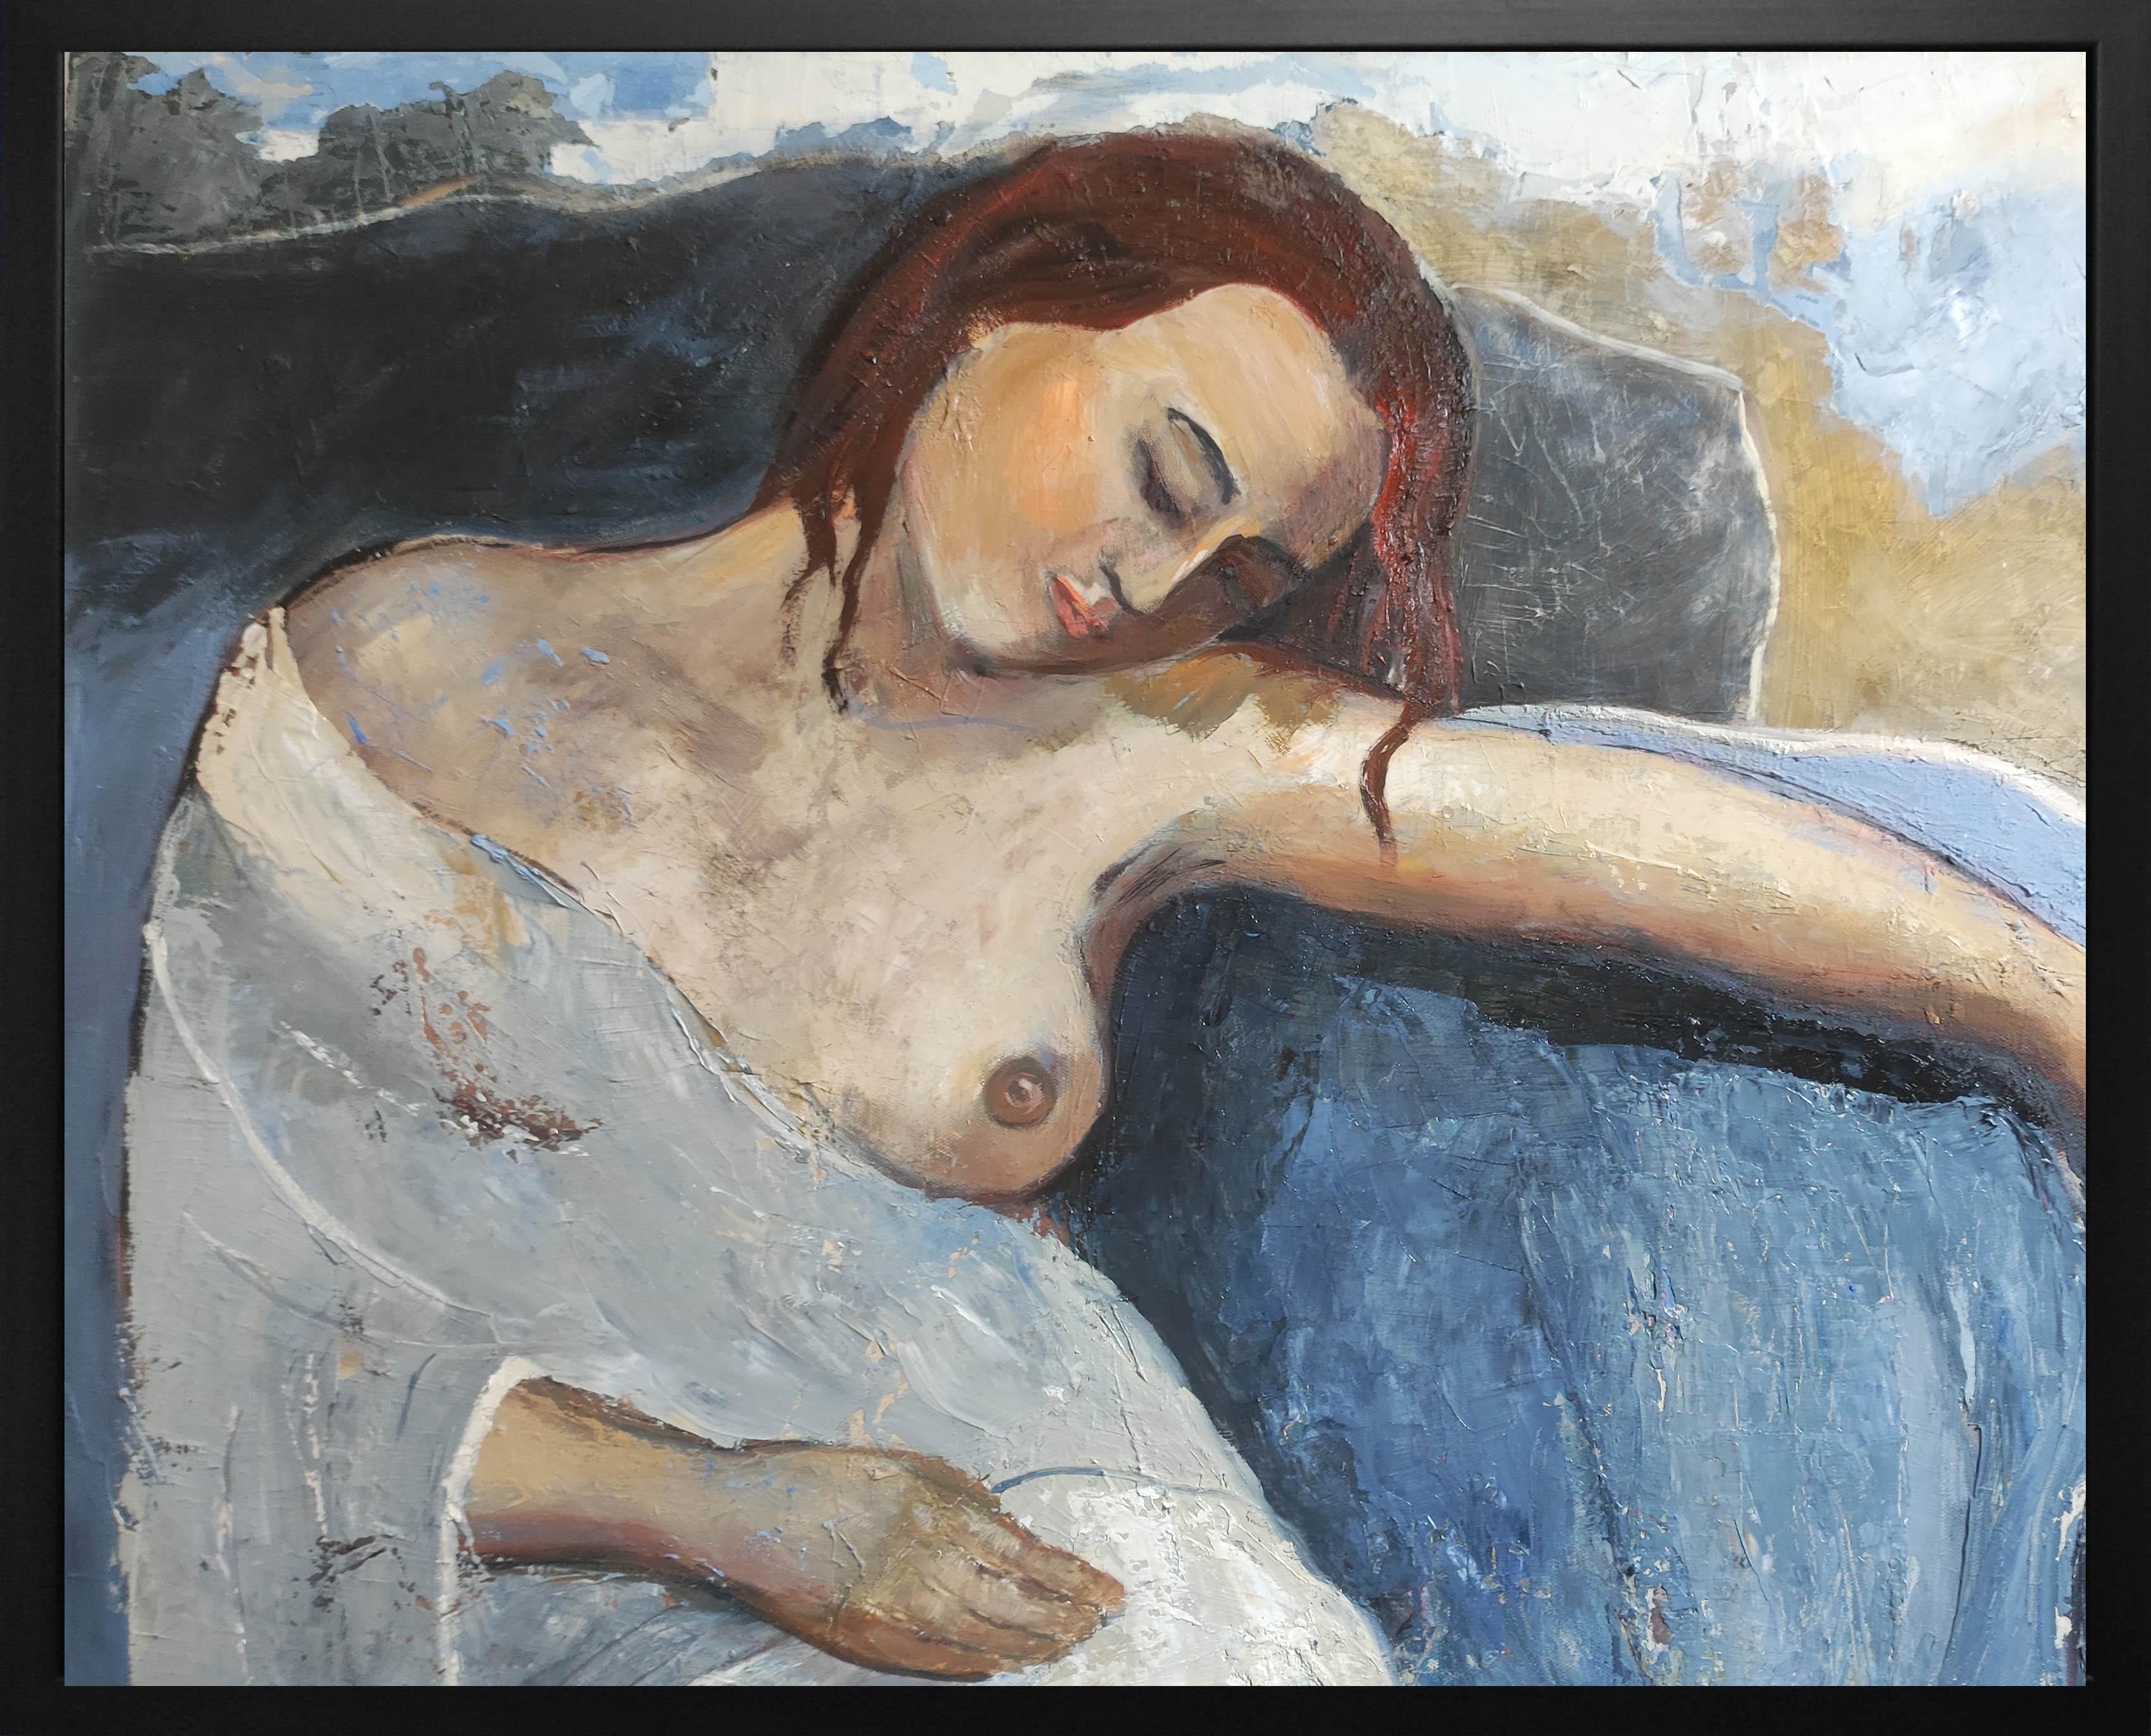 Figurative Painting SOPHIE DUMONT - Femme nue bleue, huile sur toile, peinture figurative, contemporaine